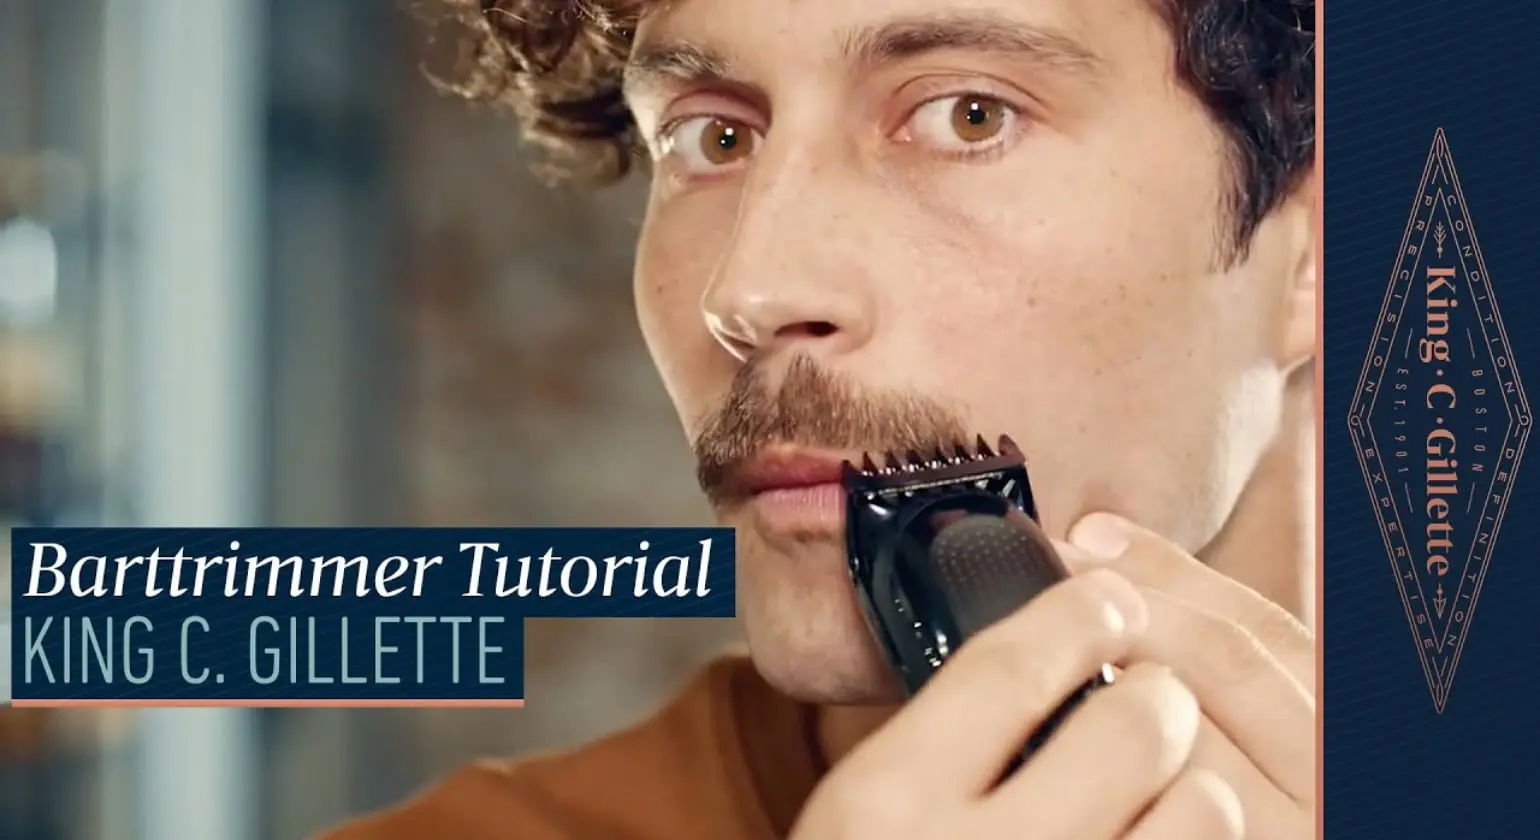 Anleitung zum Trimmen und Stylen des Schnurrbarts mit dem King C. Gillette Bartschneider